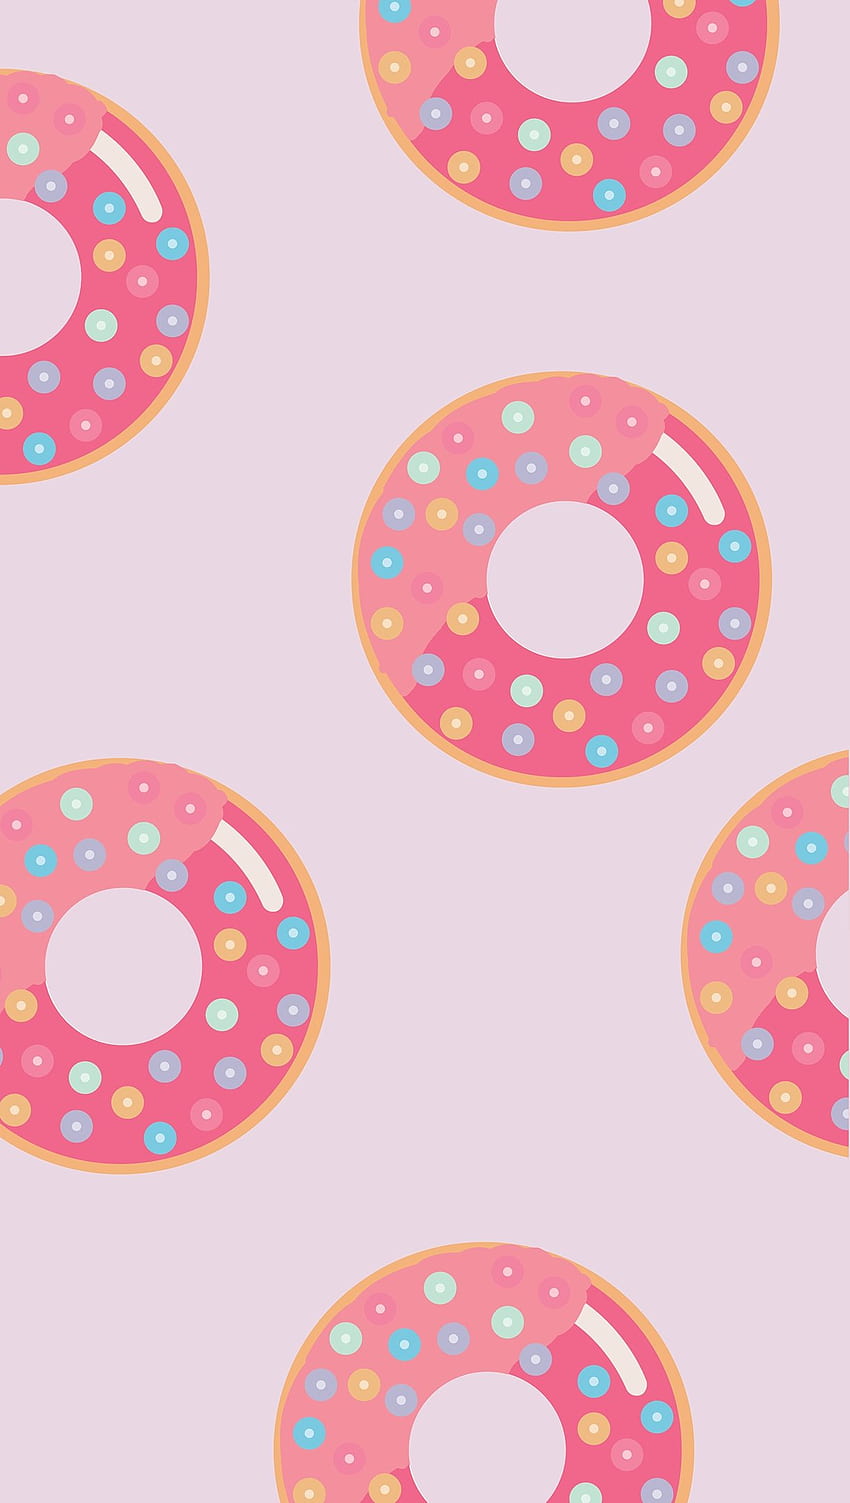 Donuts pattern Ultra HD phone wallpaper